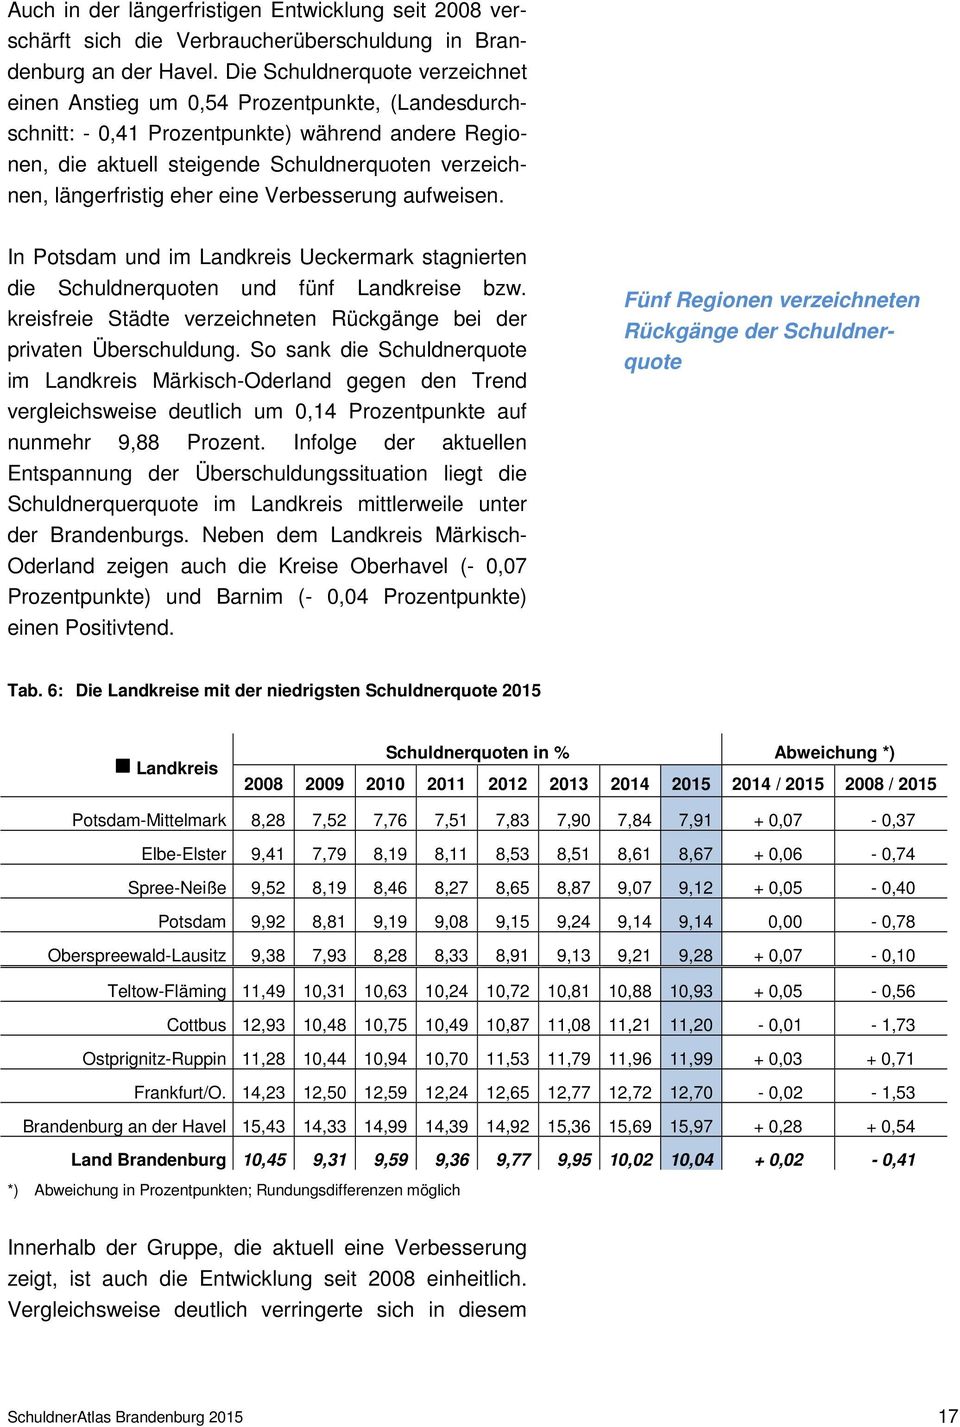 längerfristig eher eine Verbesserung aufweisen. In Potsdam und im Landkreis Ueckermark stagnierten die Schuldnerquoten und fünf Landkreise bzw.